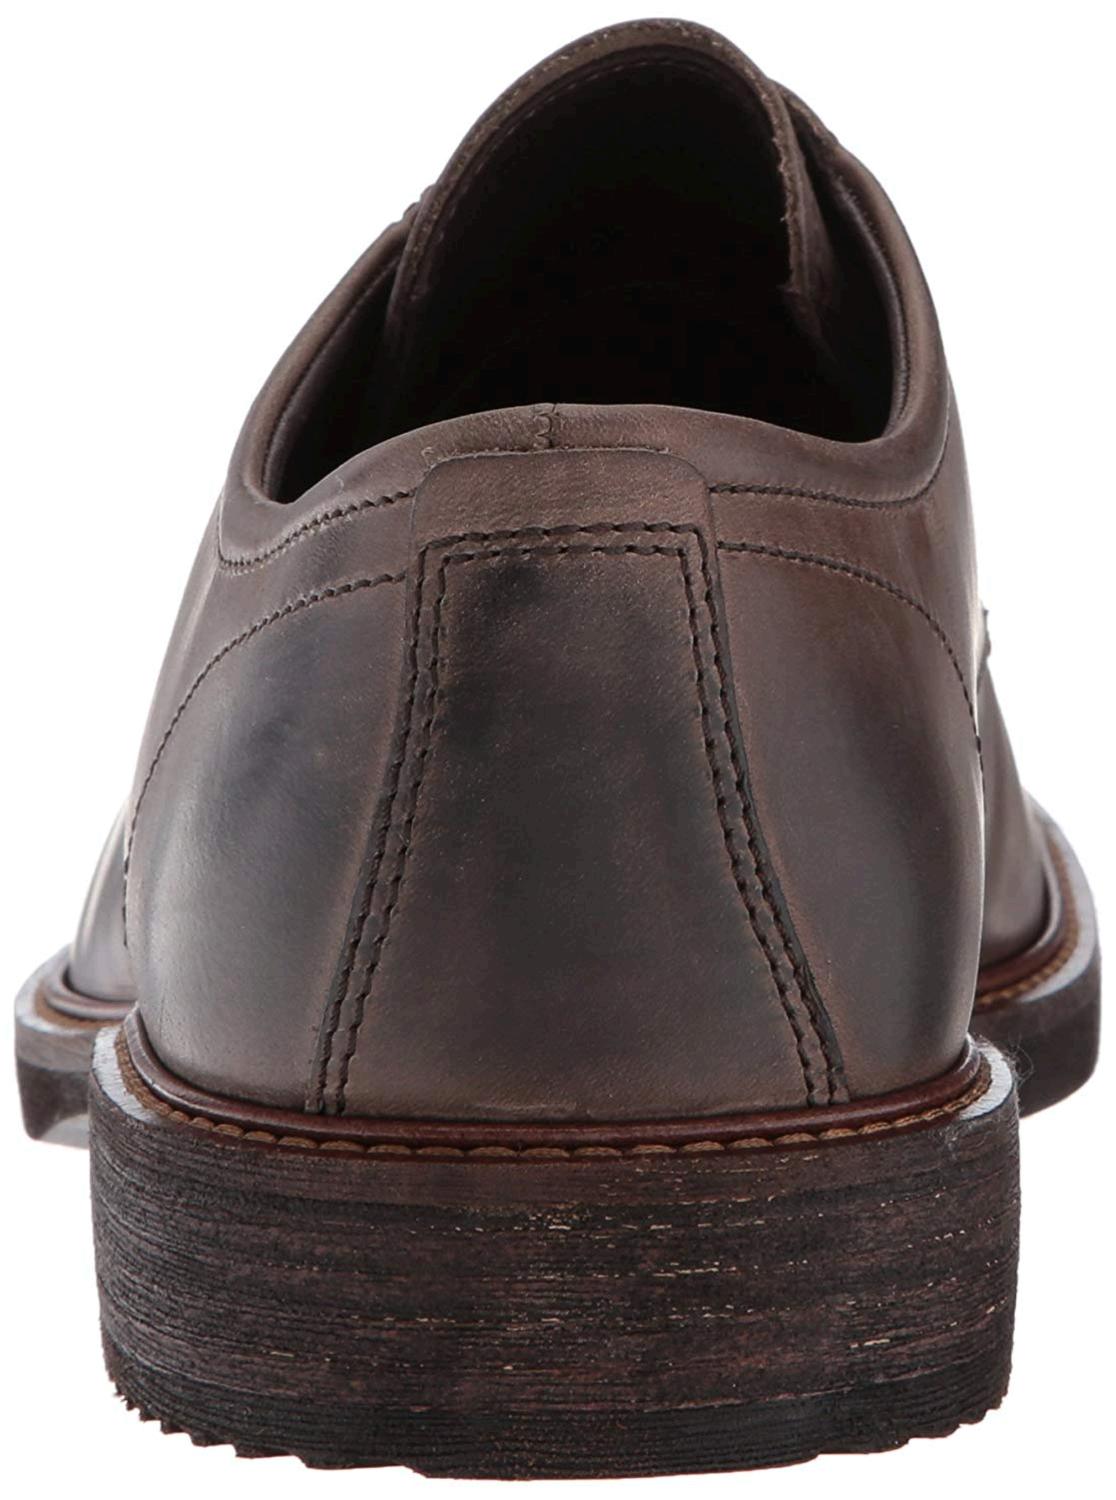 ECCO Men's Kenton Plain Toe Tie Oxford, Dark Clay, Size 10.0 aFAr | eBay